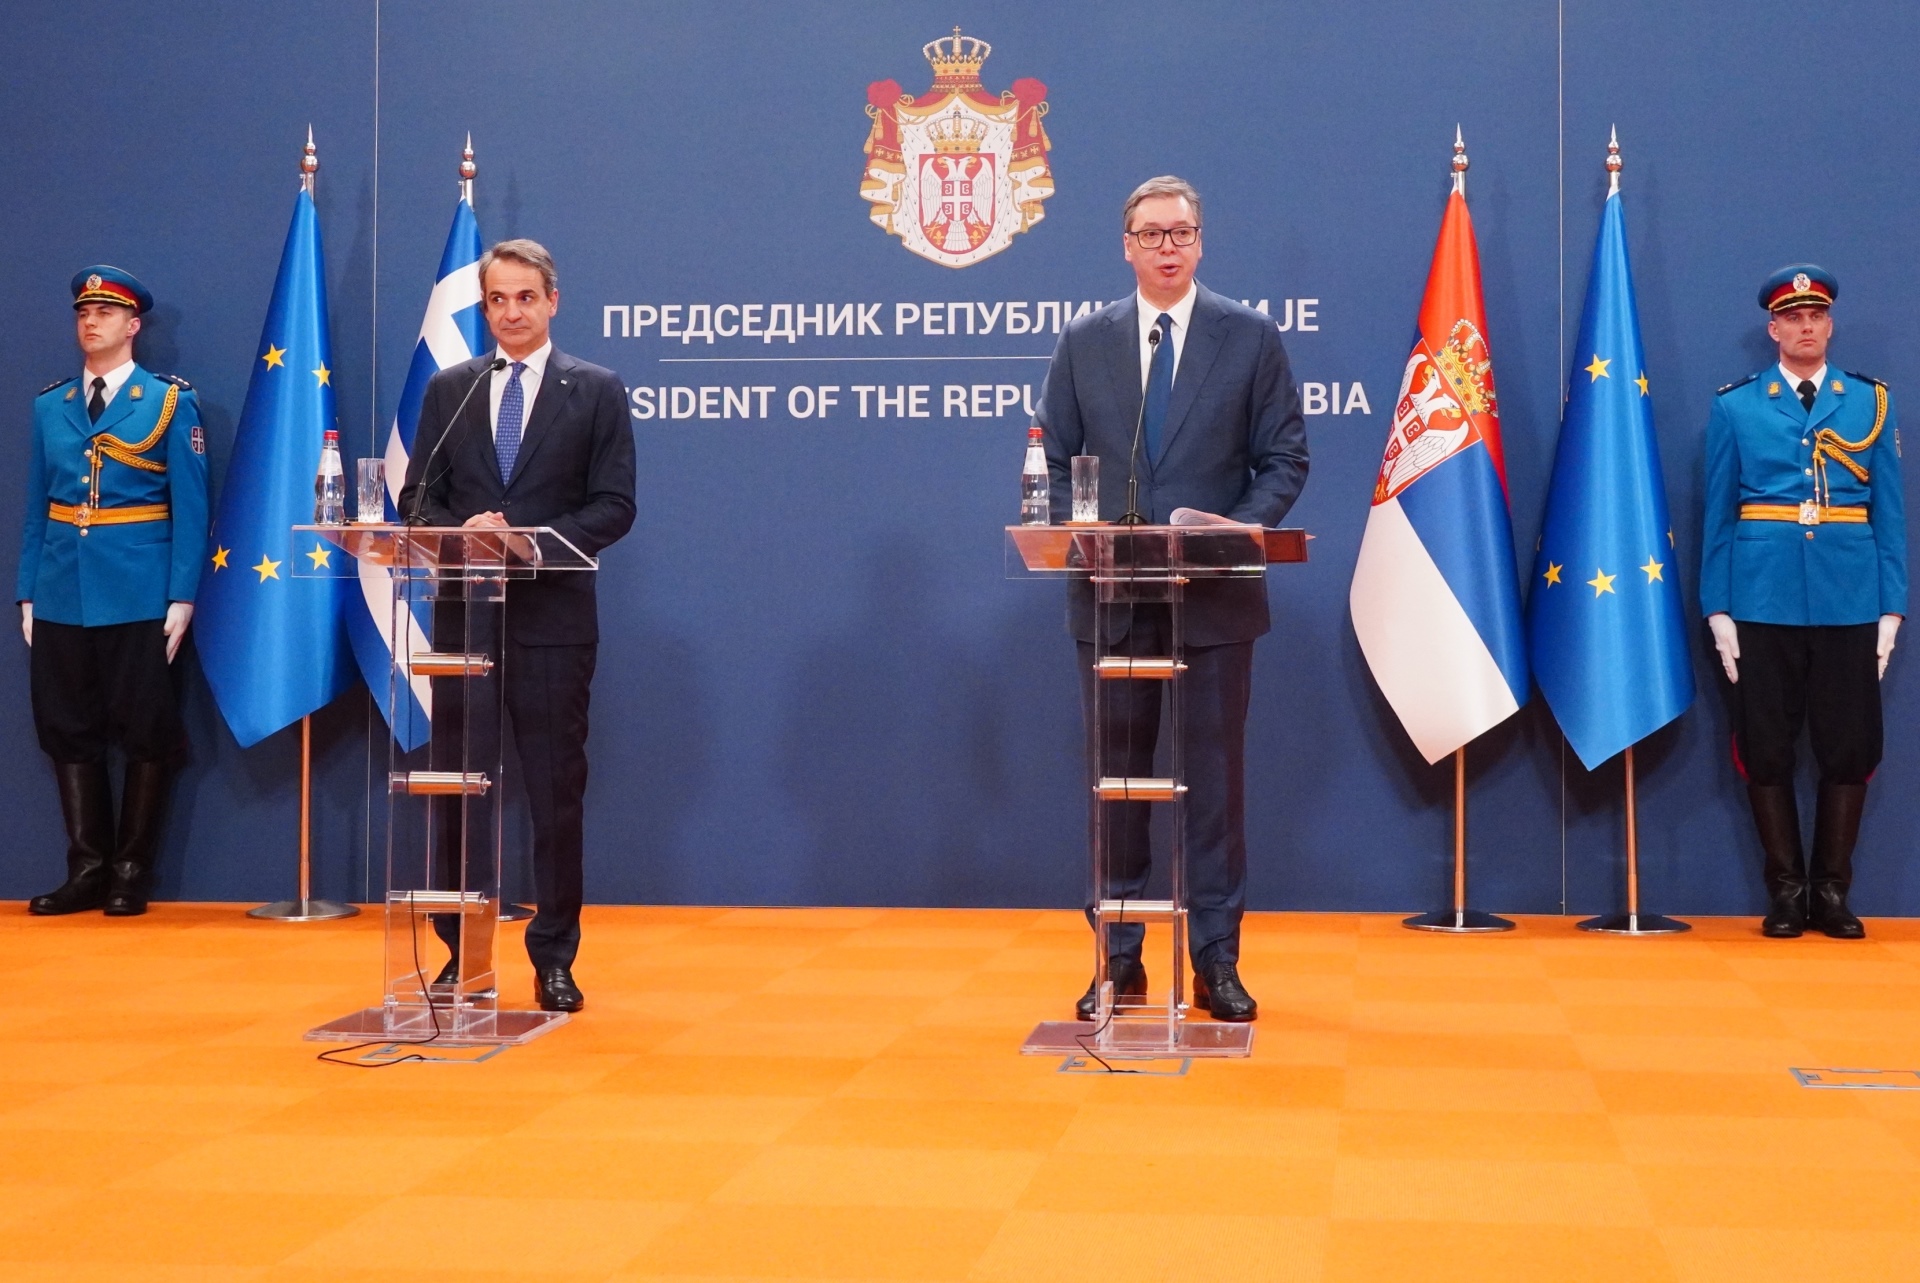 Председник Републике Србије Александар Вучић изјавио је да су Србија и Грчка увек подржавале територијални интегритет једна другој, као и да верује да ће тако бити и у будућности.